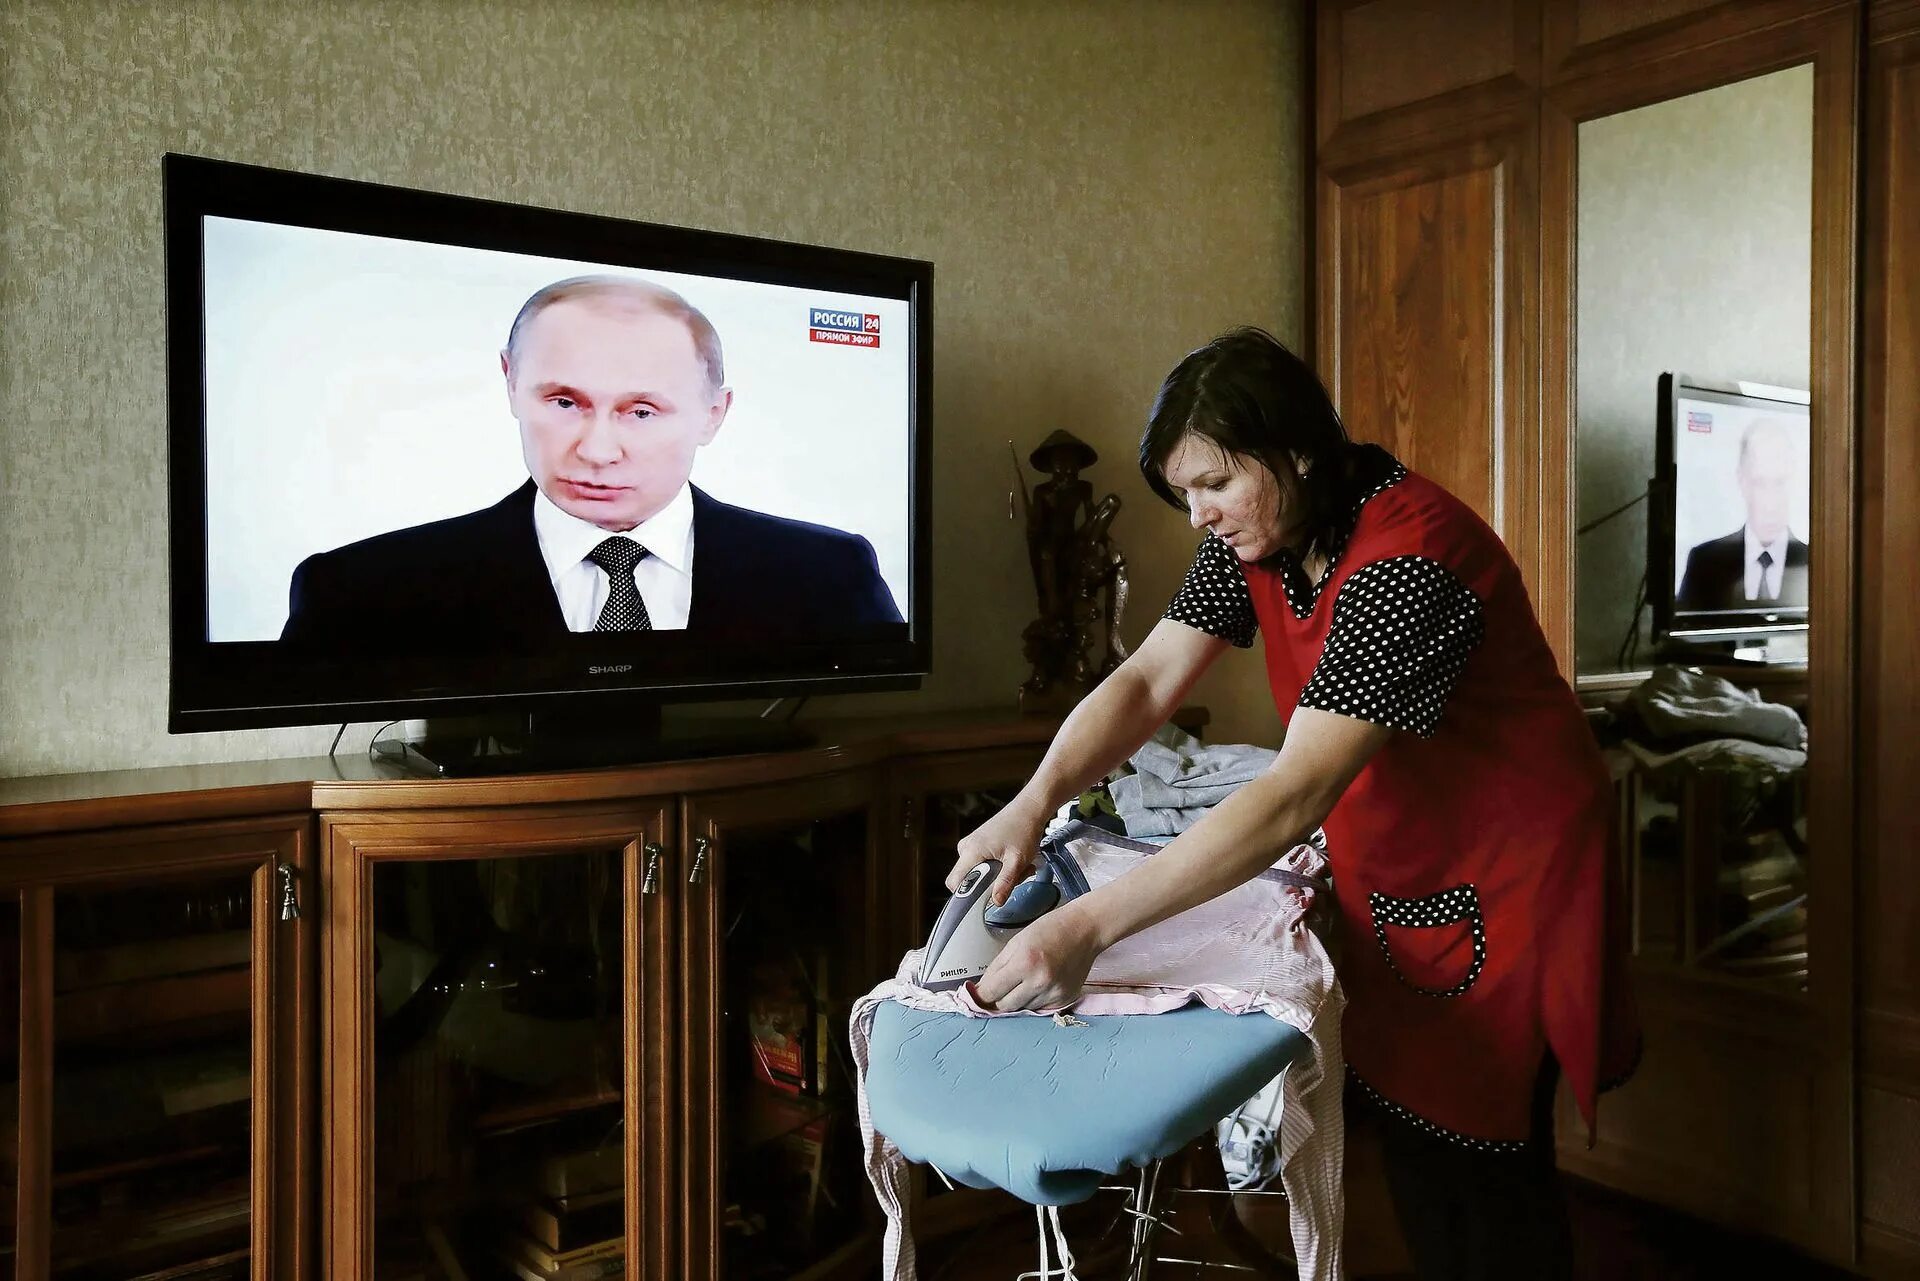 Новости по телевизору время. Бабушка у телевизора с Путиным.